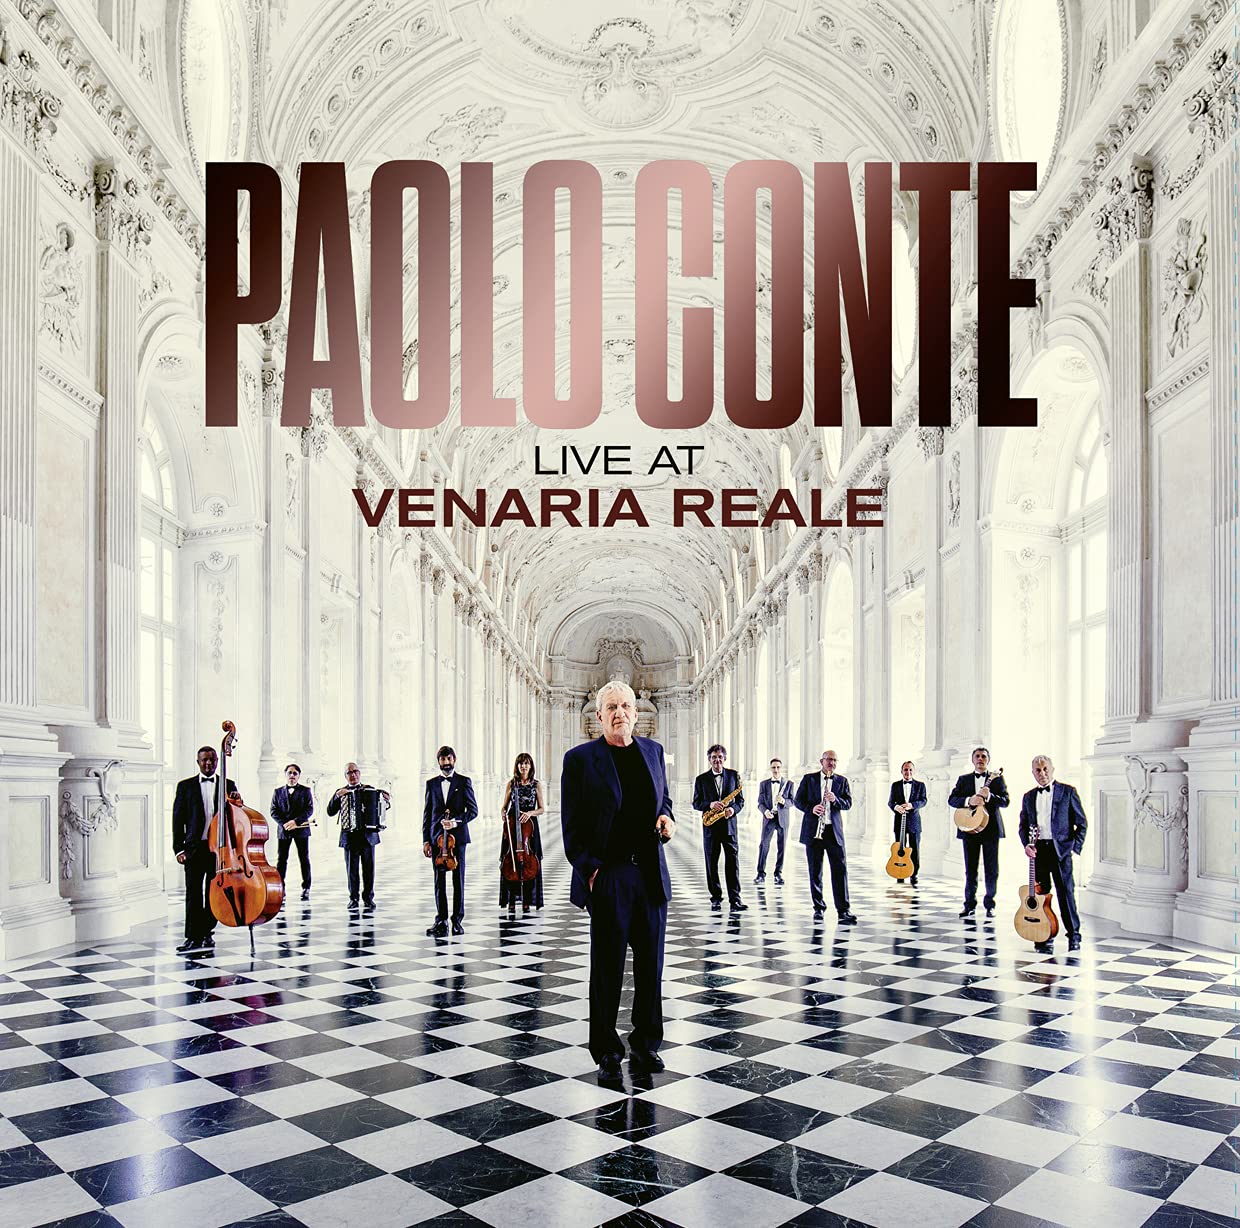 Vinile Paolo Conte - Live At Venaria Reale 2 Lp NUOVO SIGILLATO EDIZIONE DEL SUBITO DISPONIBILE